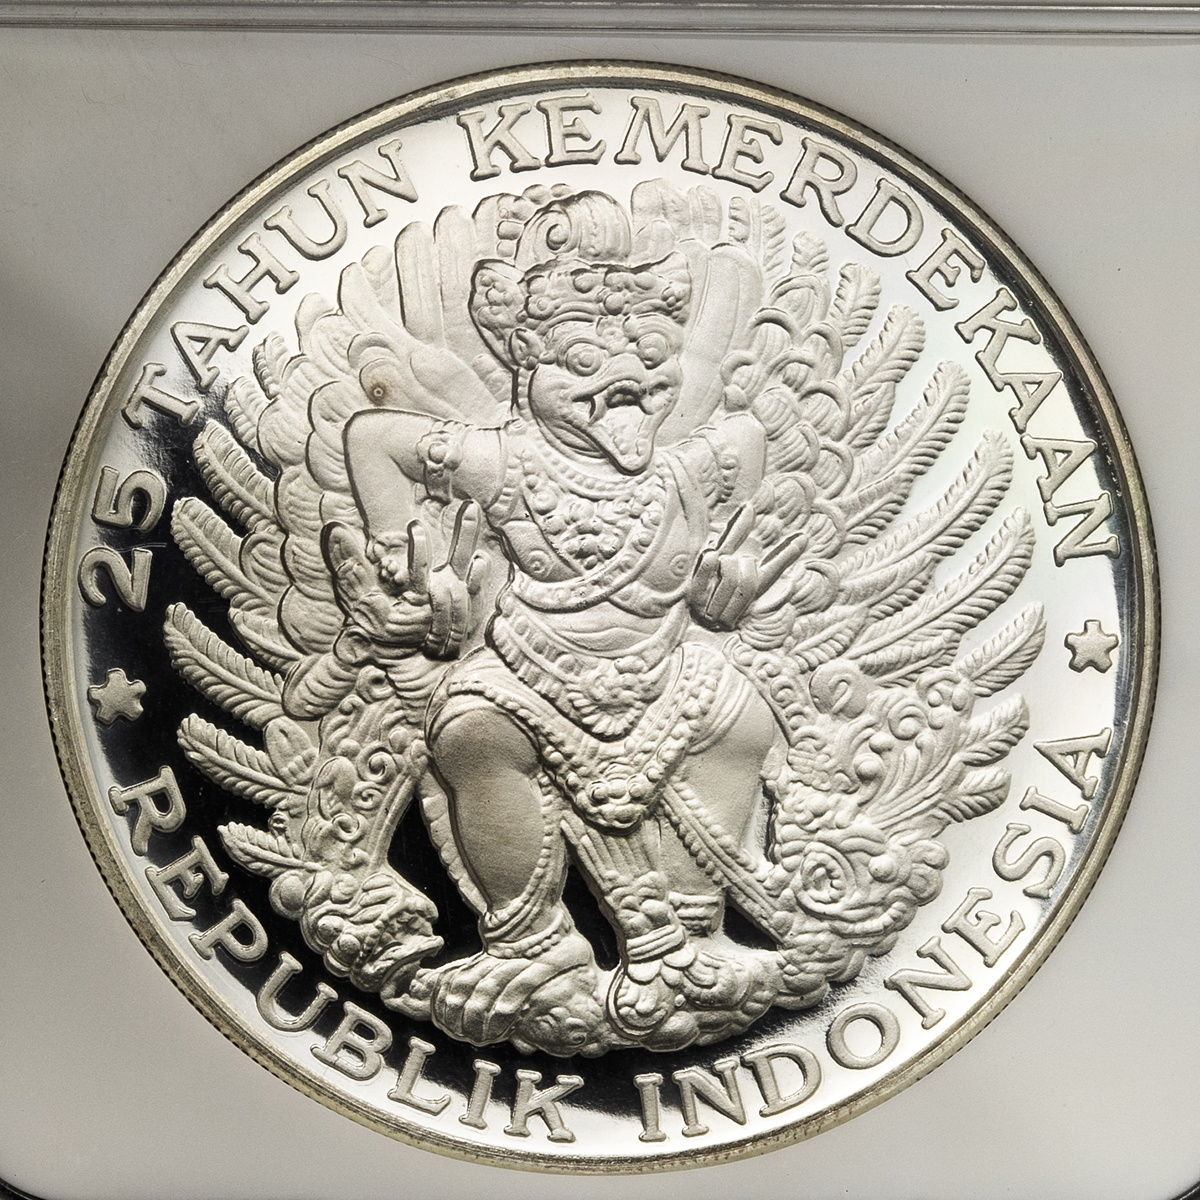 インドネシア 貨幣 10,000ルピア プルーフ銀貨 NGC PF68 